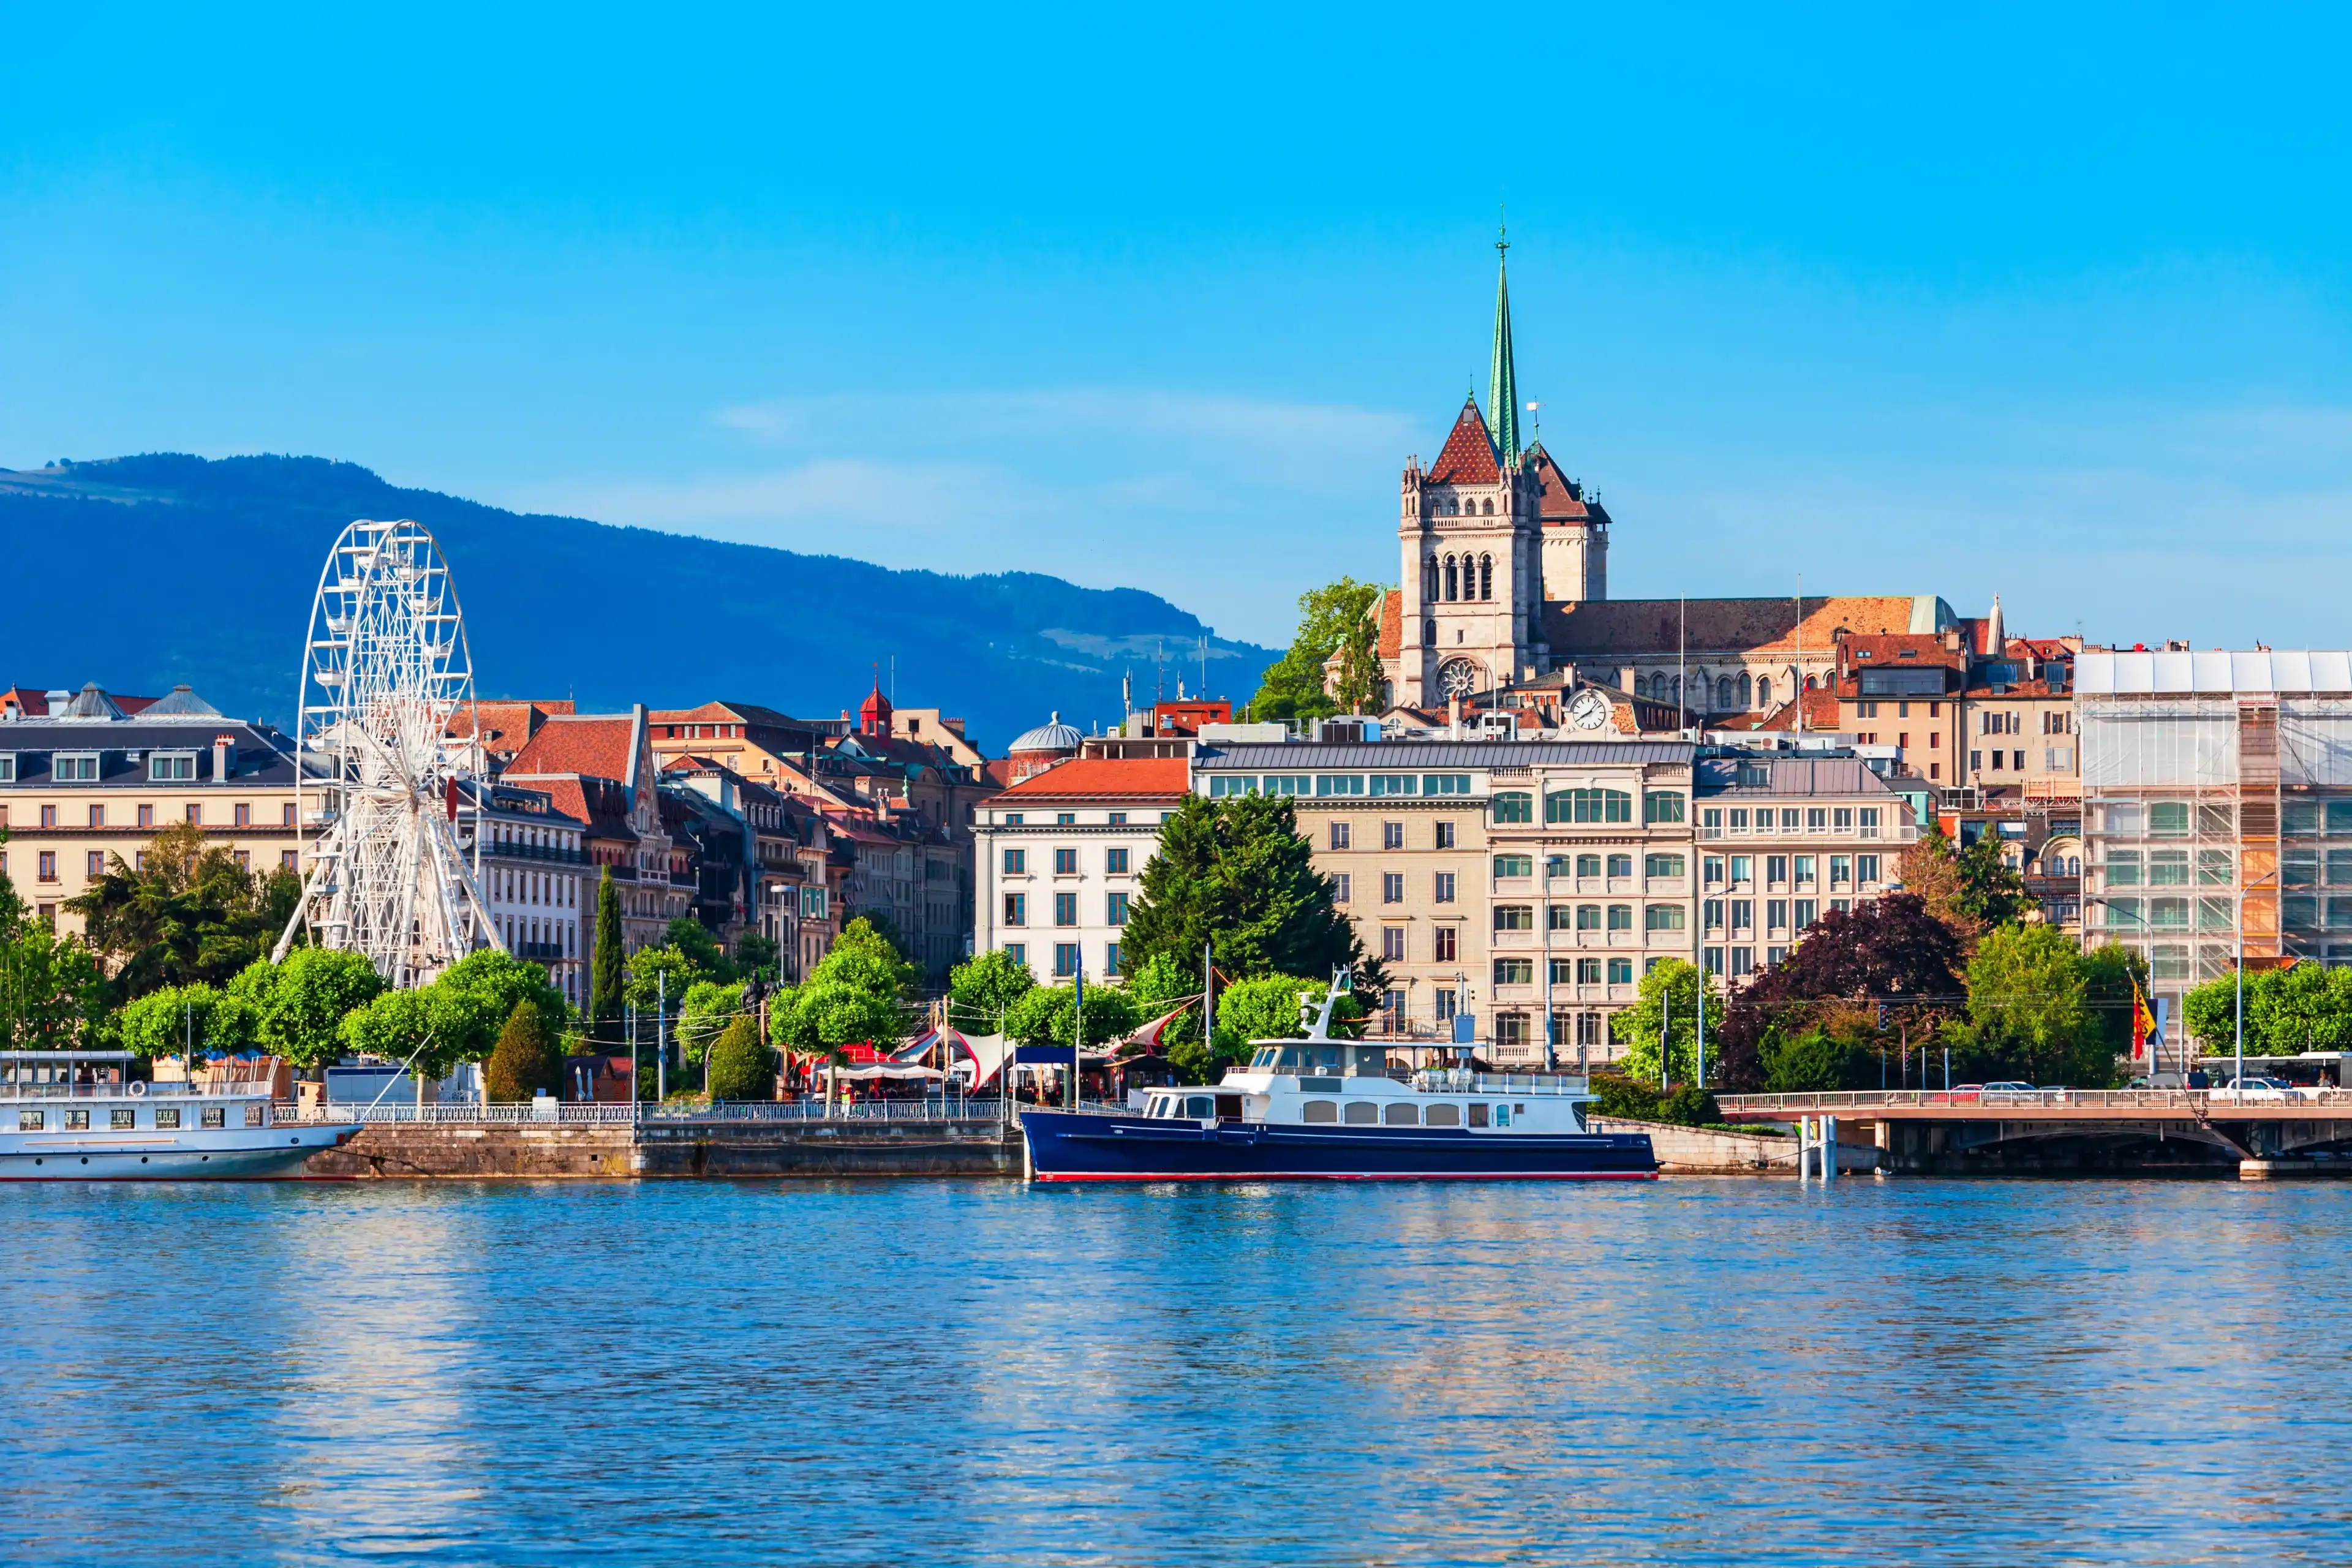 Best Genève hotels. Cheap hotels in Genève, Switzerland